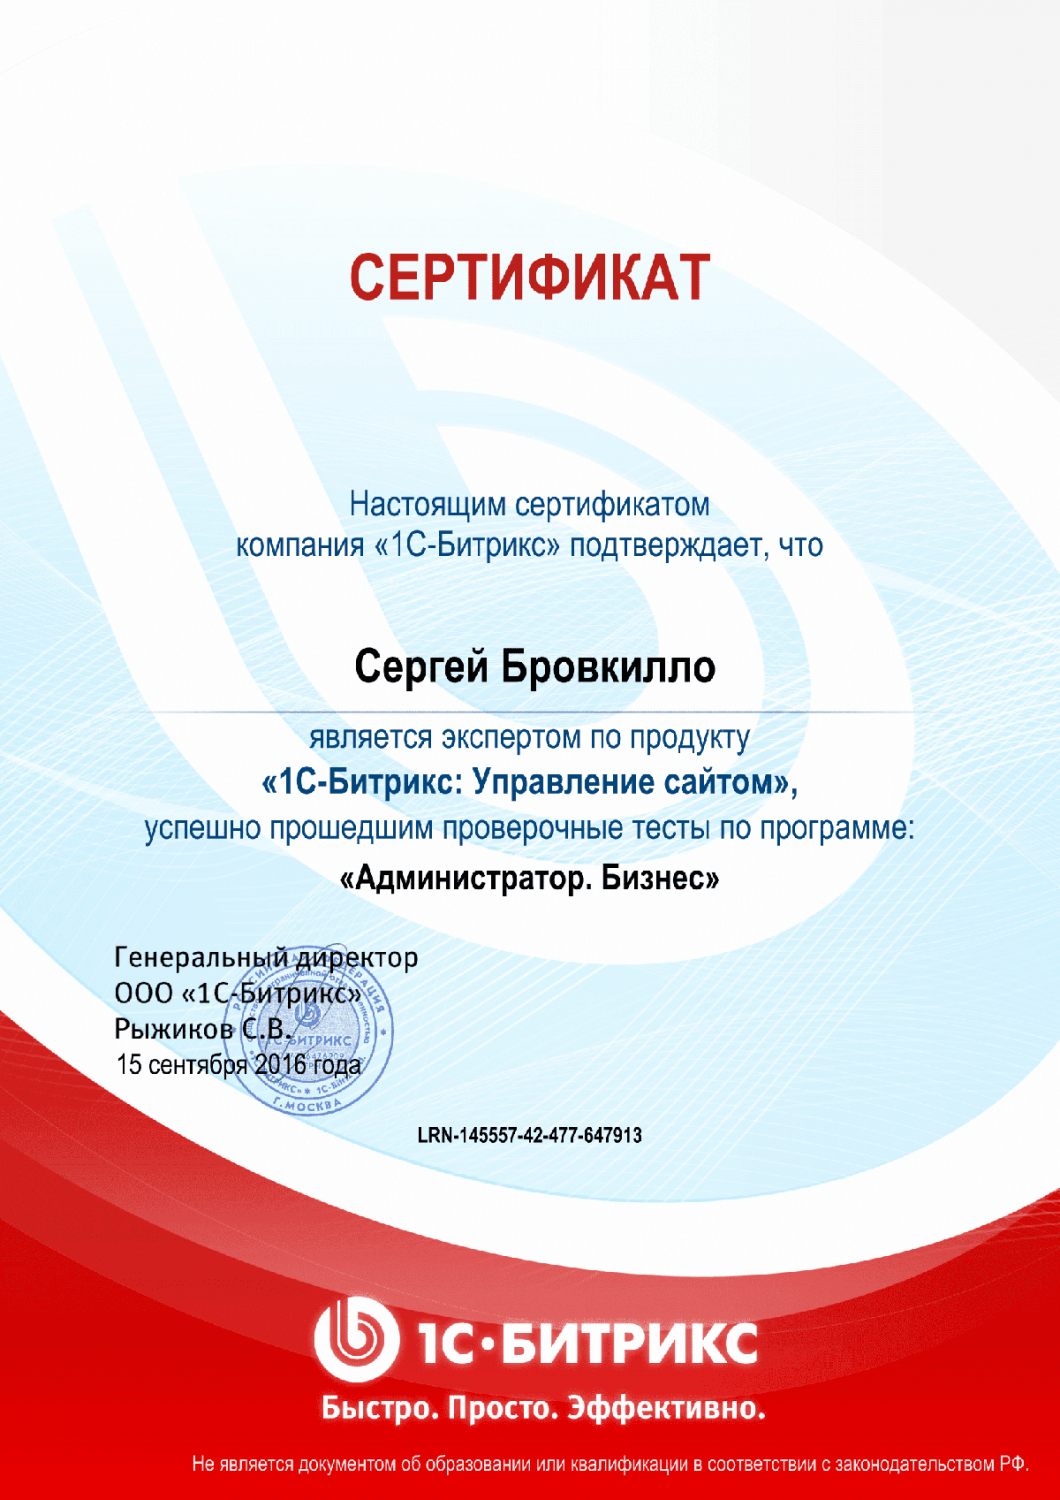 Сертификат эксперта по программе "Администратор. Бизнес" в Элисты